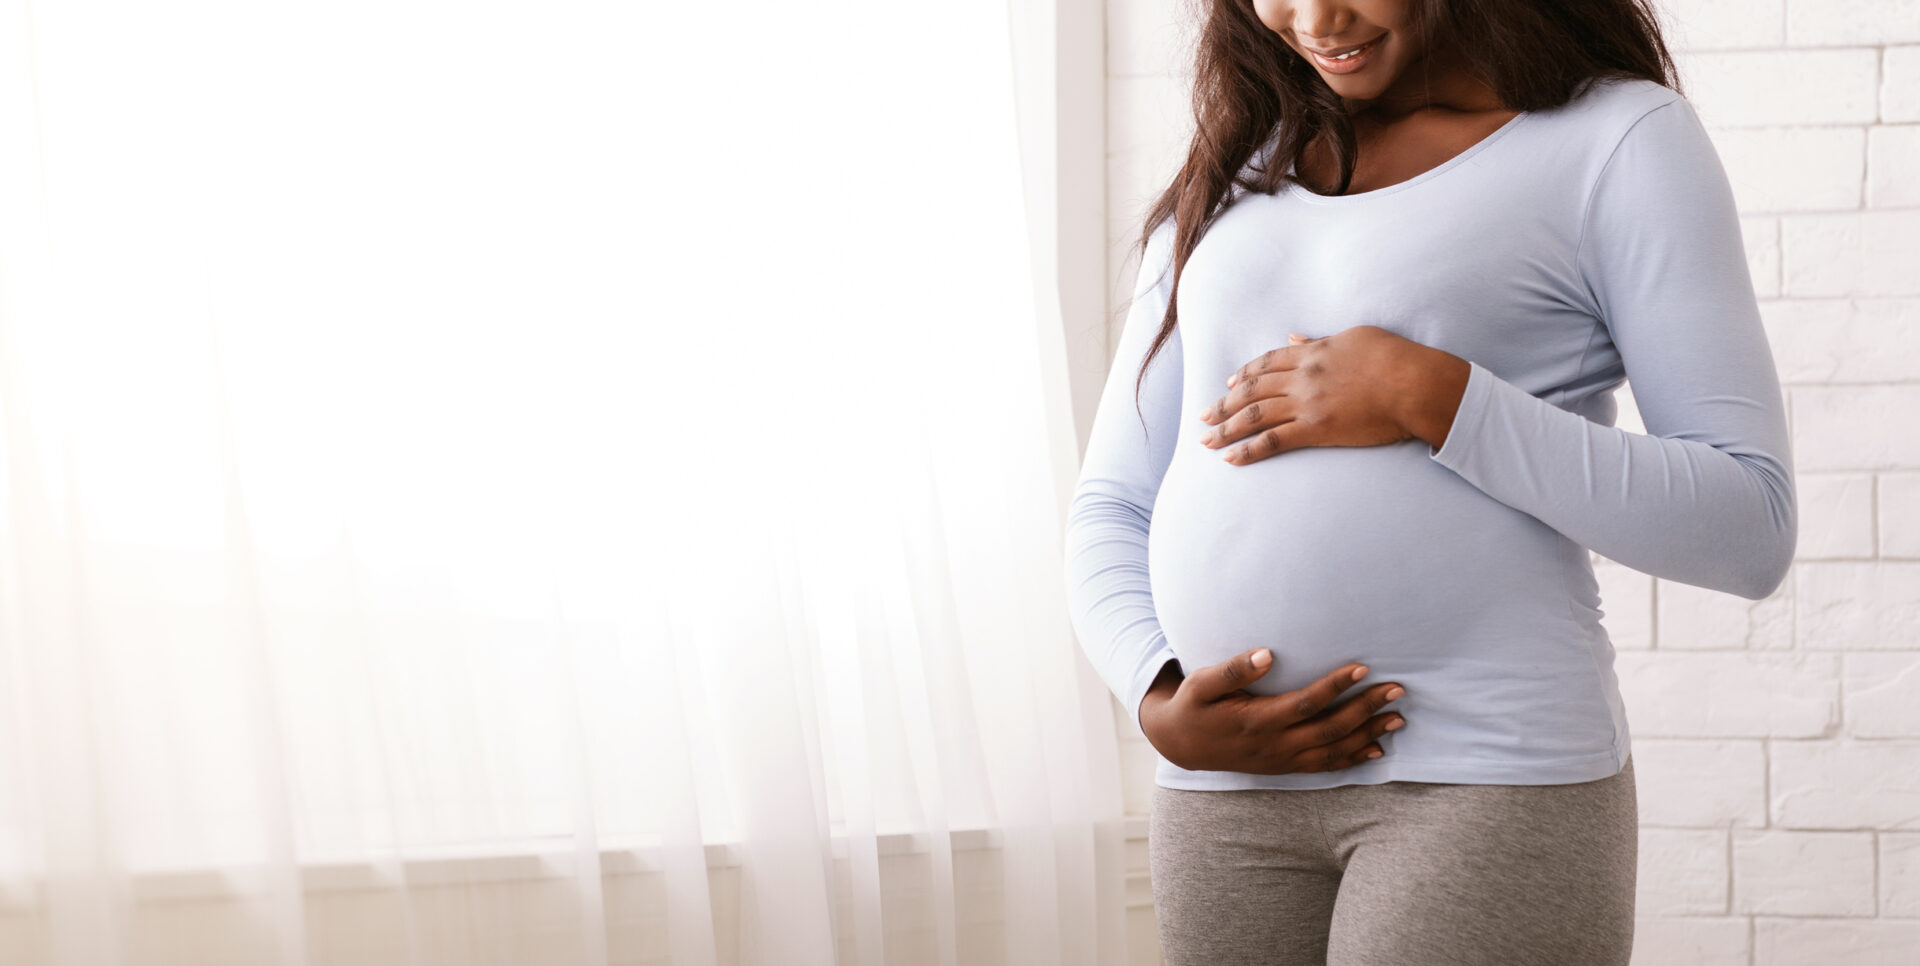 La talidomide è classificata come teratogena e causa difetti alla nascita se assunta da donne in gravidanza.